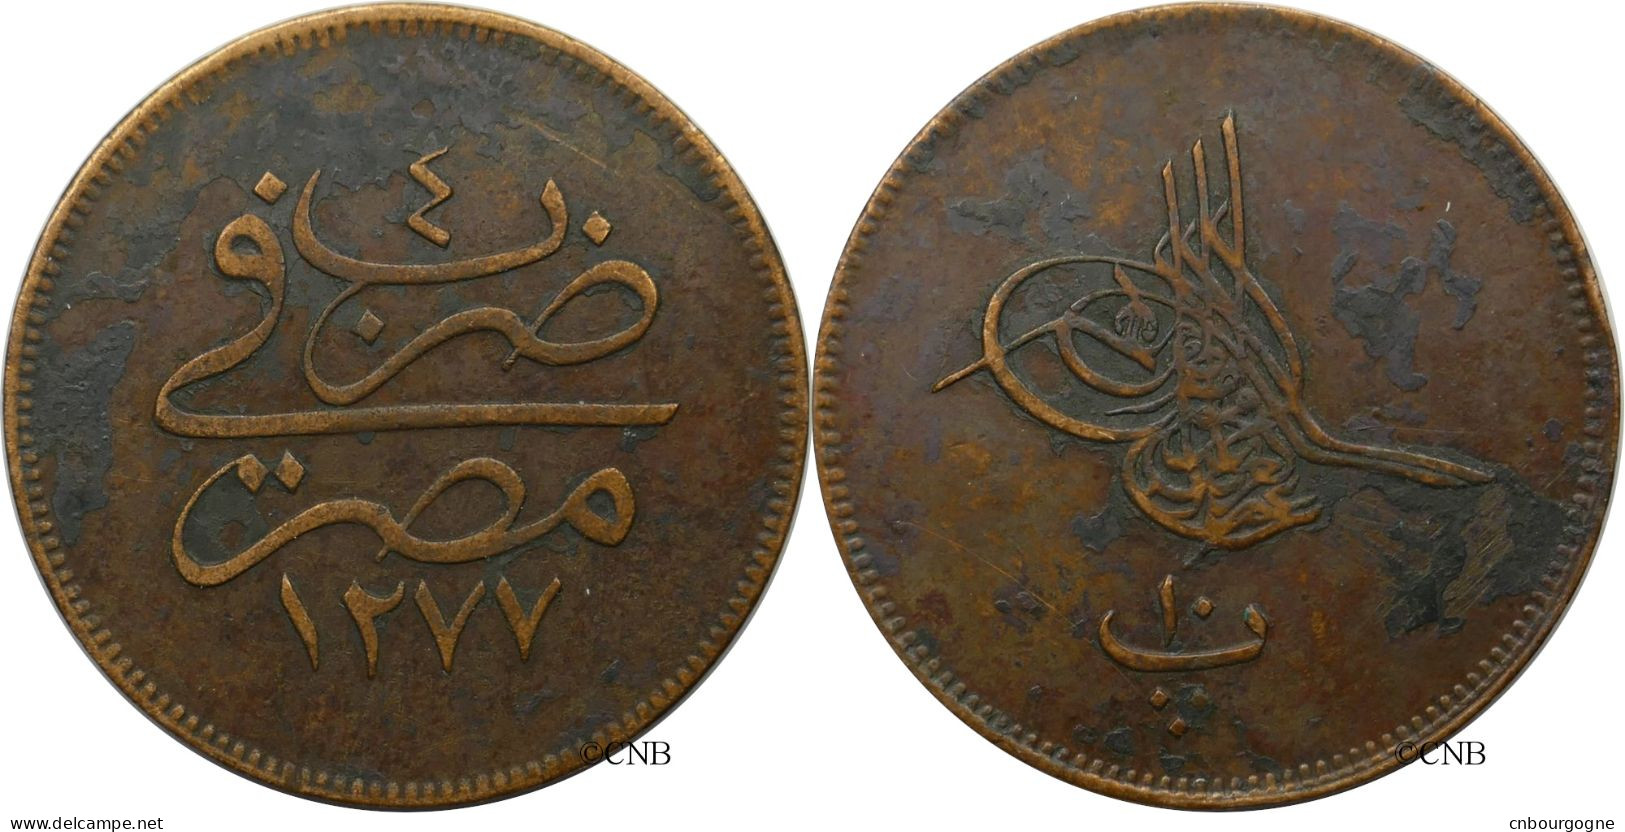 Égypte - Empire Ottoman - Abdulaziz - 10 Para AH1277/4 (1863) - TTB/XF40 - Mon6034 - Egypt